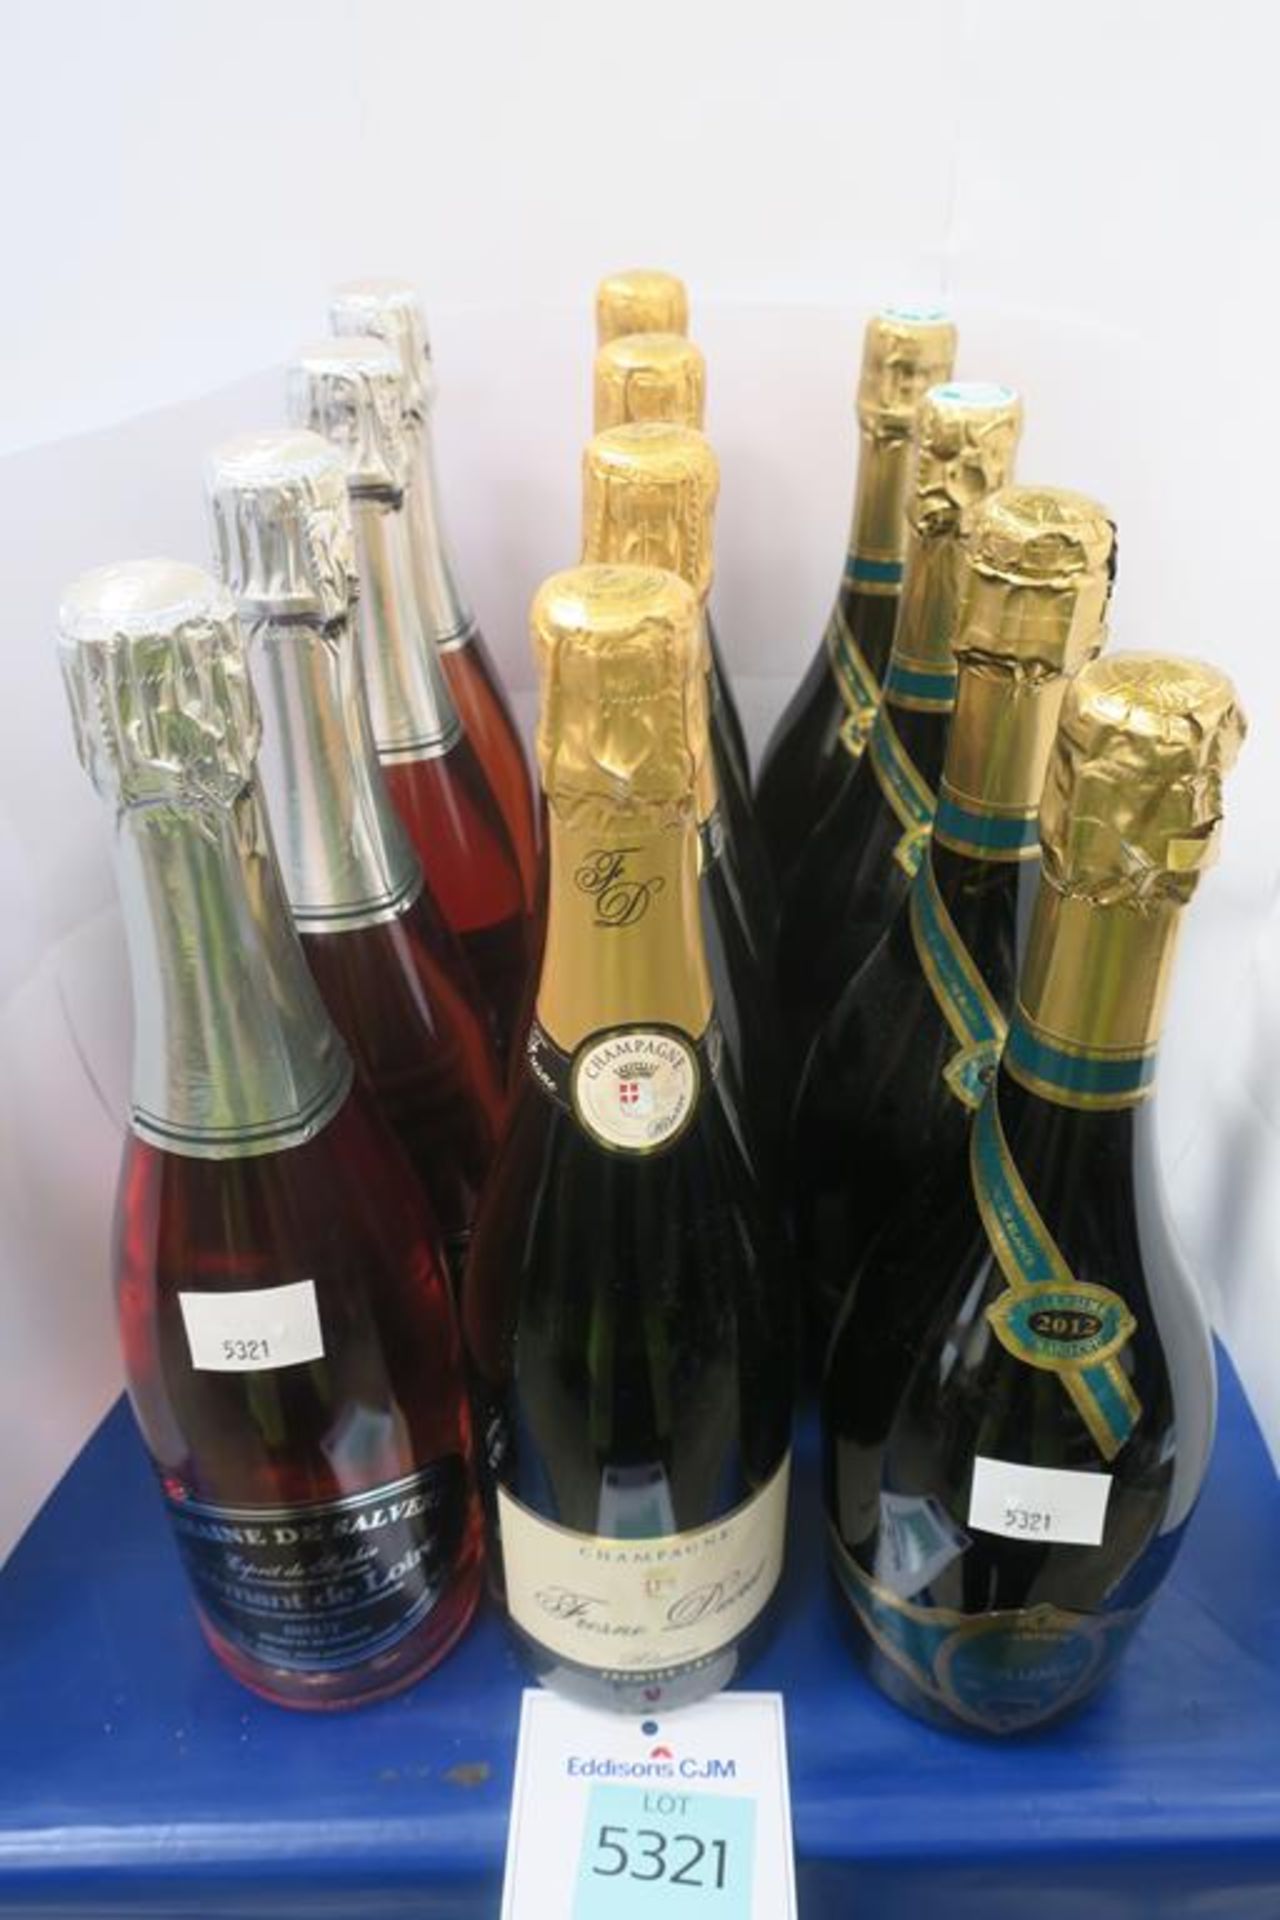 Maison Lenique Champagne, Maison Lenique Champagne, Fresne Ducret Premier Champagne and Domaine De S